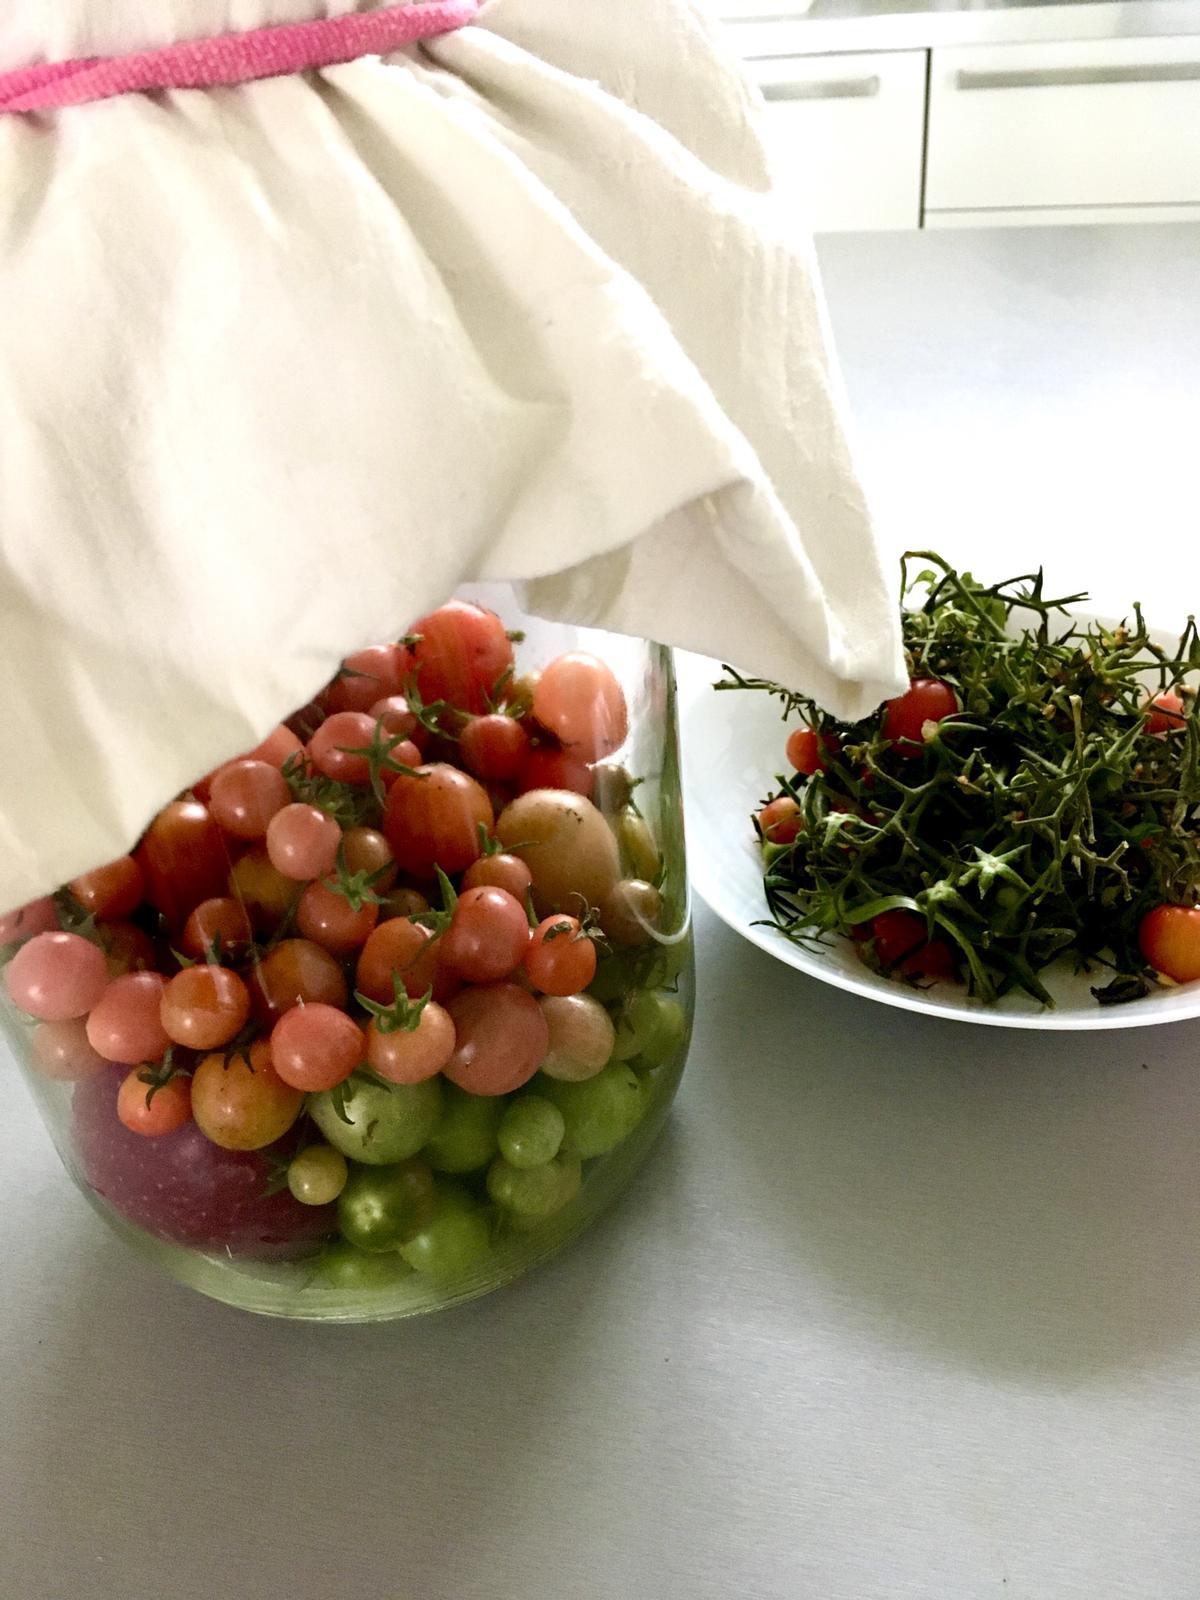 Skřítčí zahrada 2015 - 2020 - Říjen 2019 - rajčata uložená s jablkem ve sklenici zakryté plátnem, snad dojdou, dozrajou